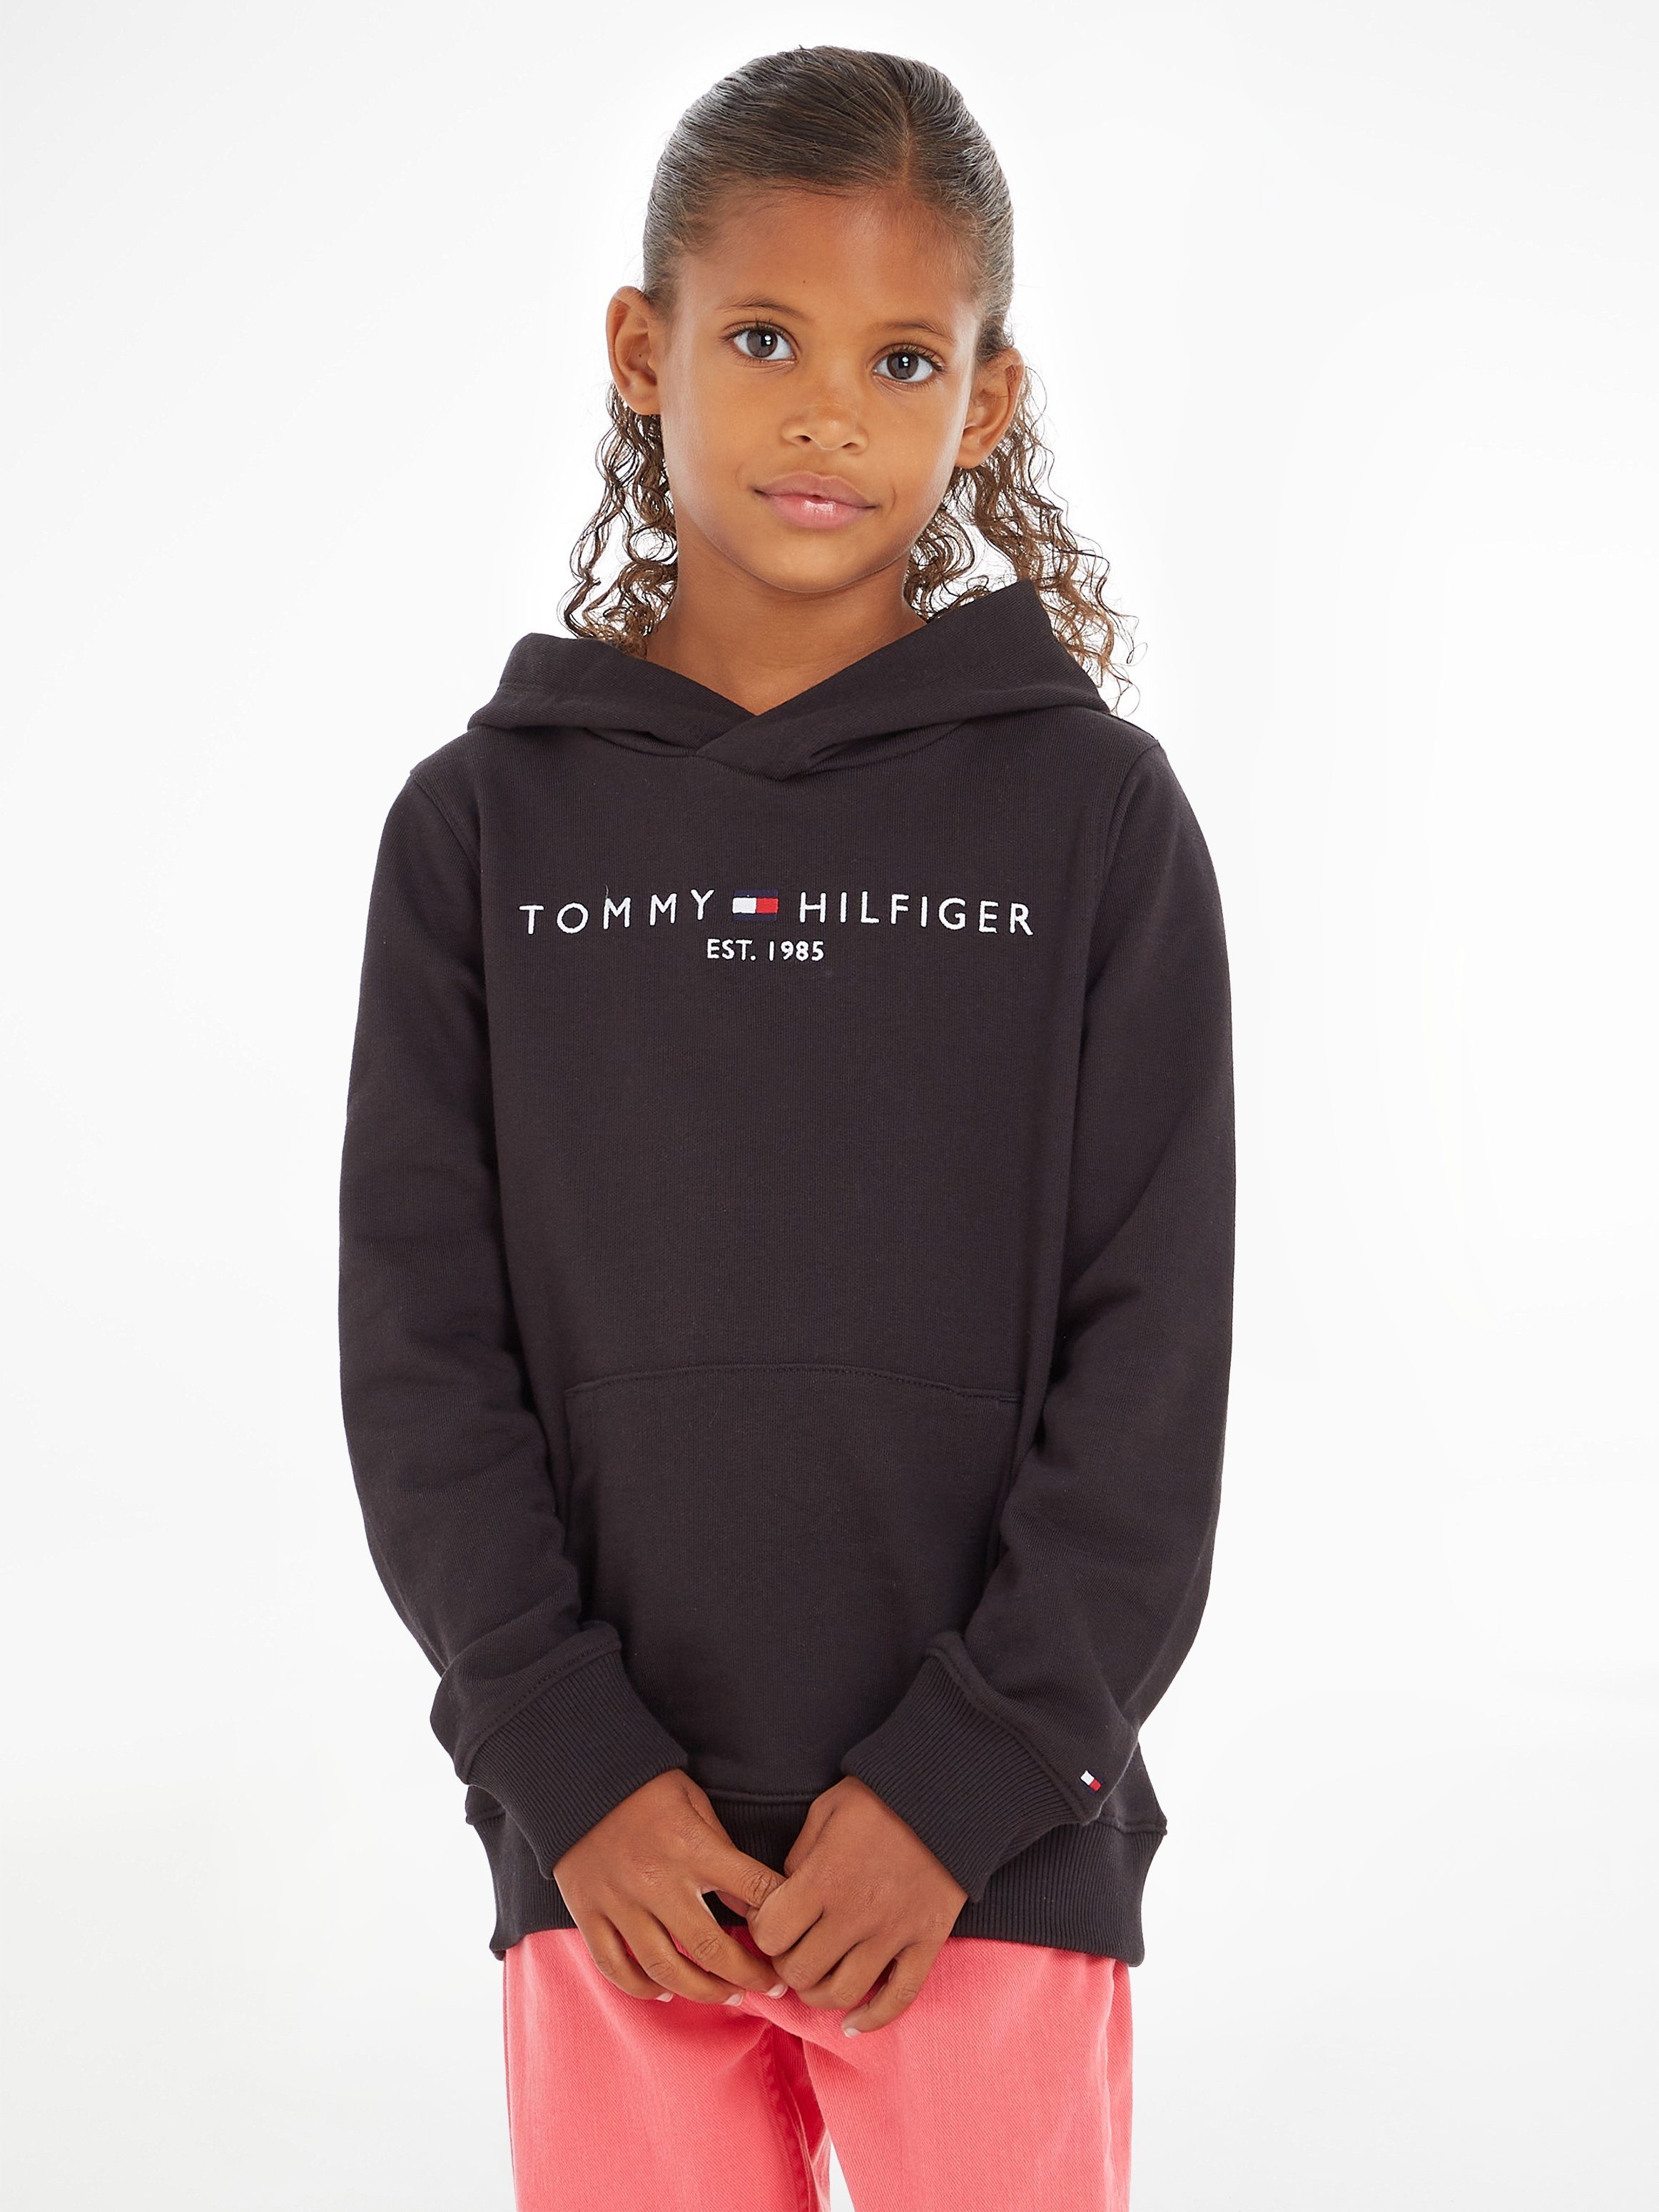 Mädchen MiniMe,für Kapuzensweatshirt und Kids Hilfiger Jungen ESSENTIAL Kinder Tommy Junior HOODIE